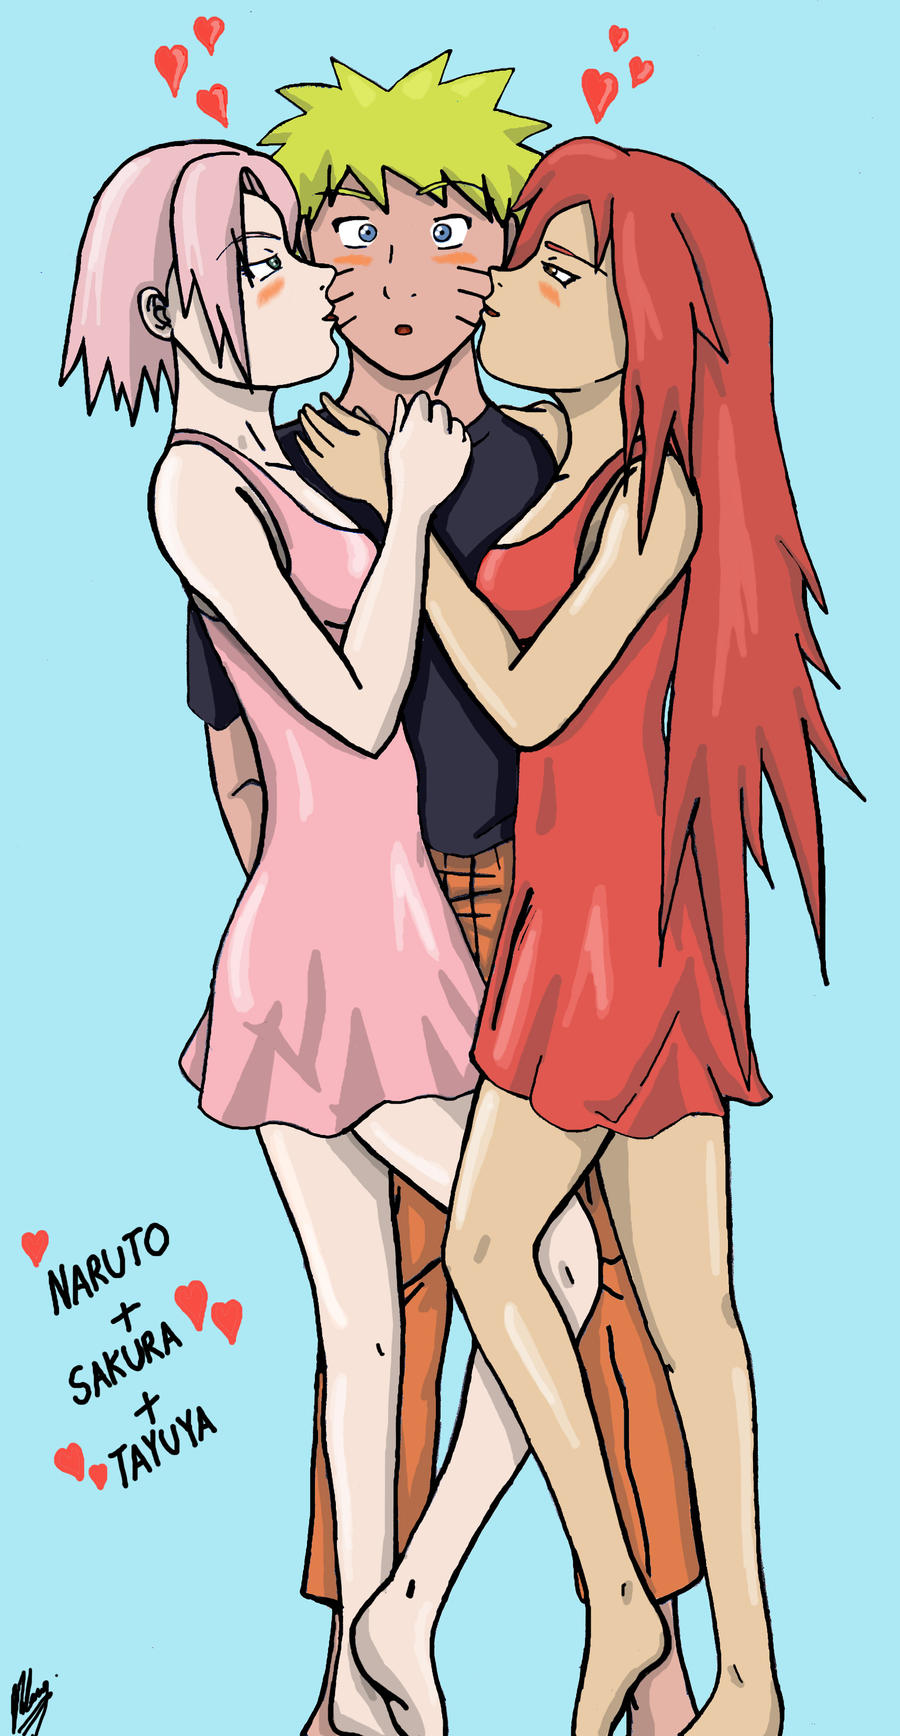 Naruto, Sakura and Tayuya.